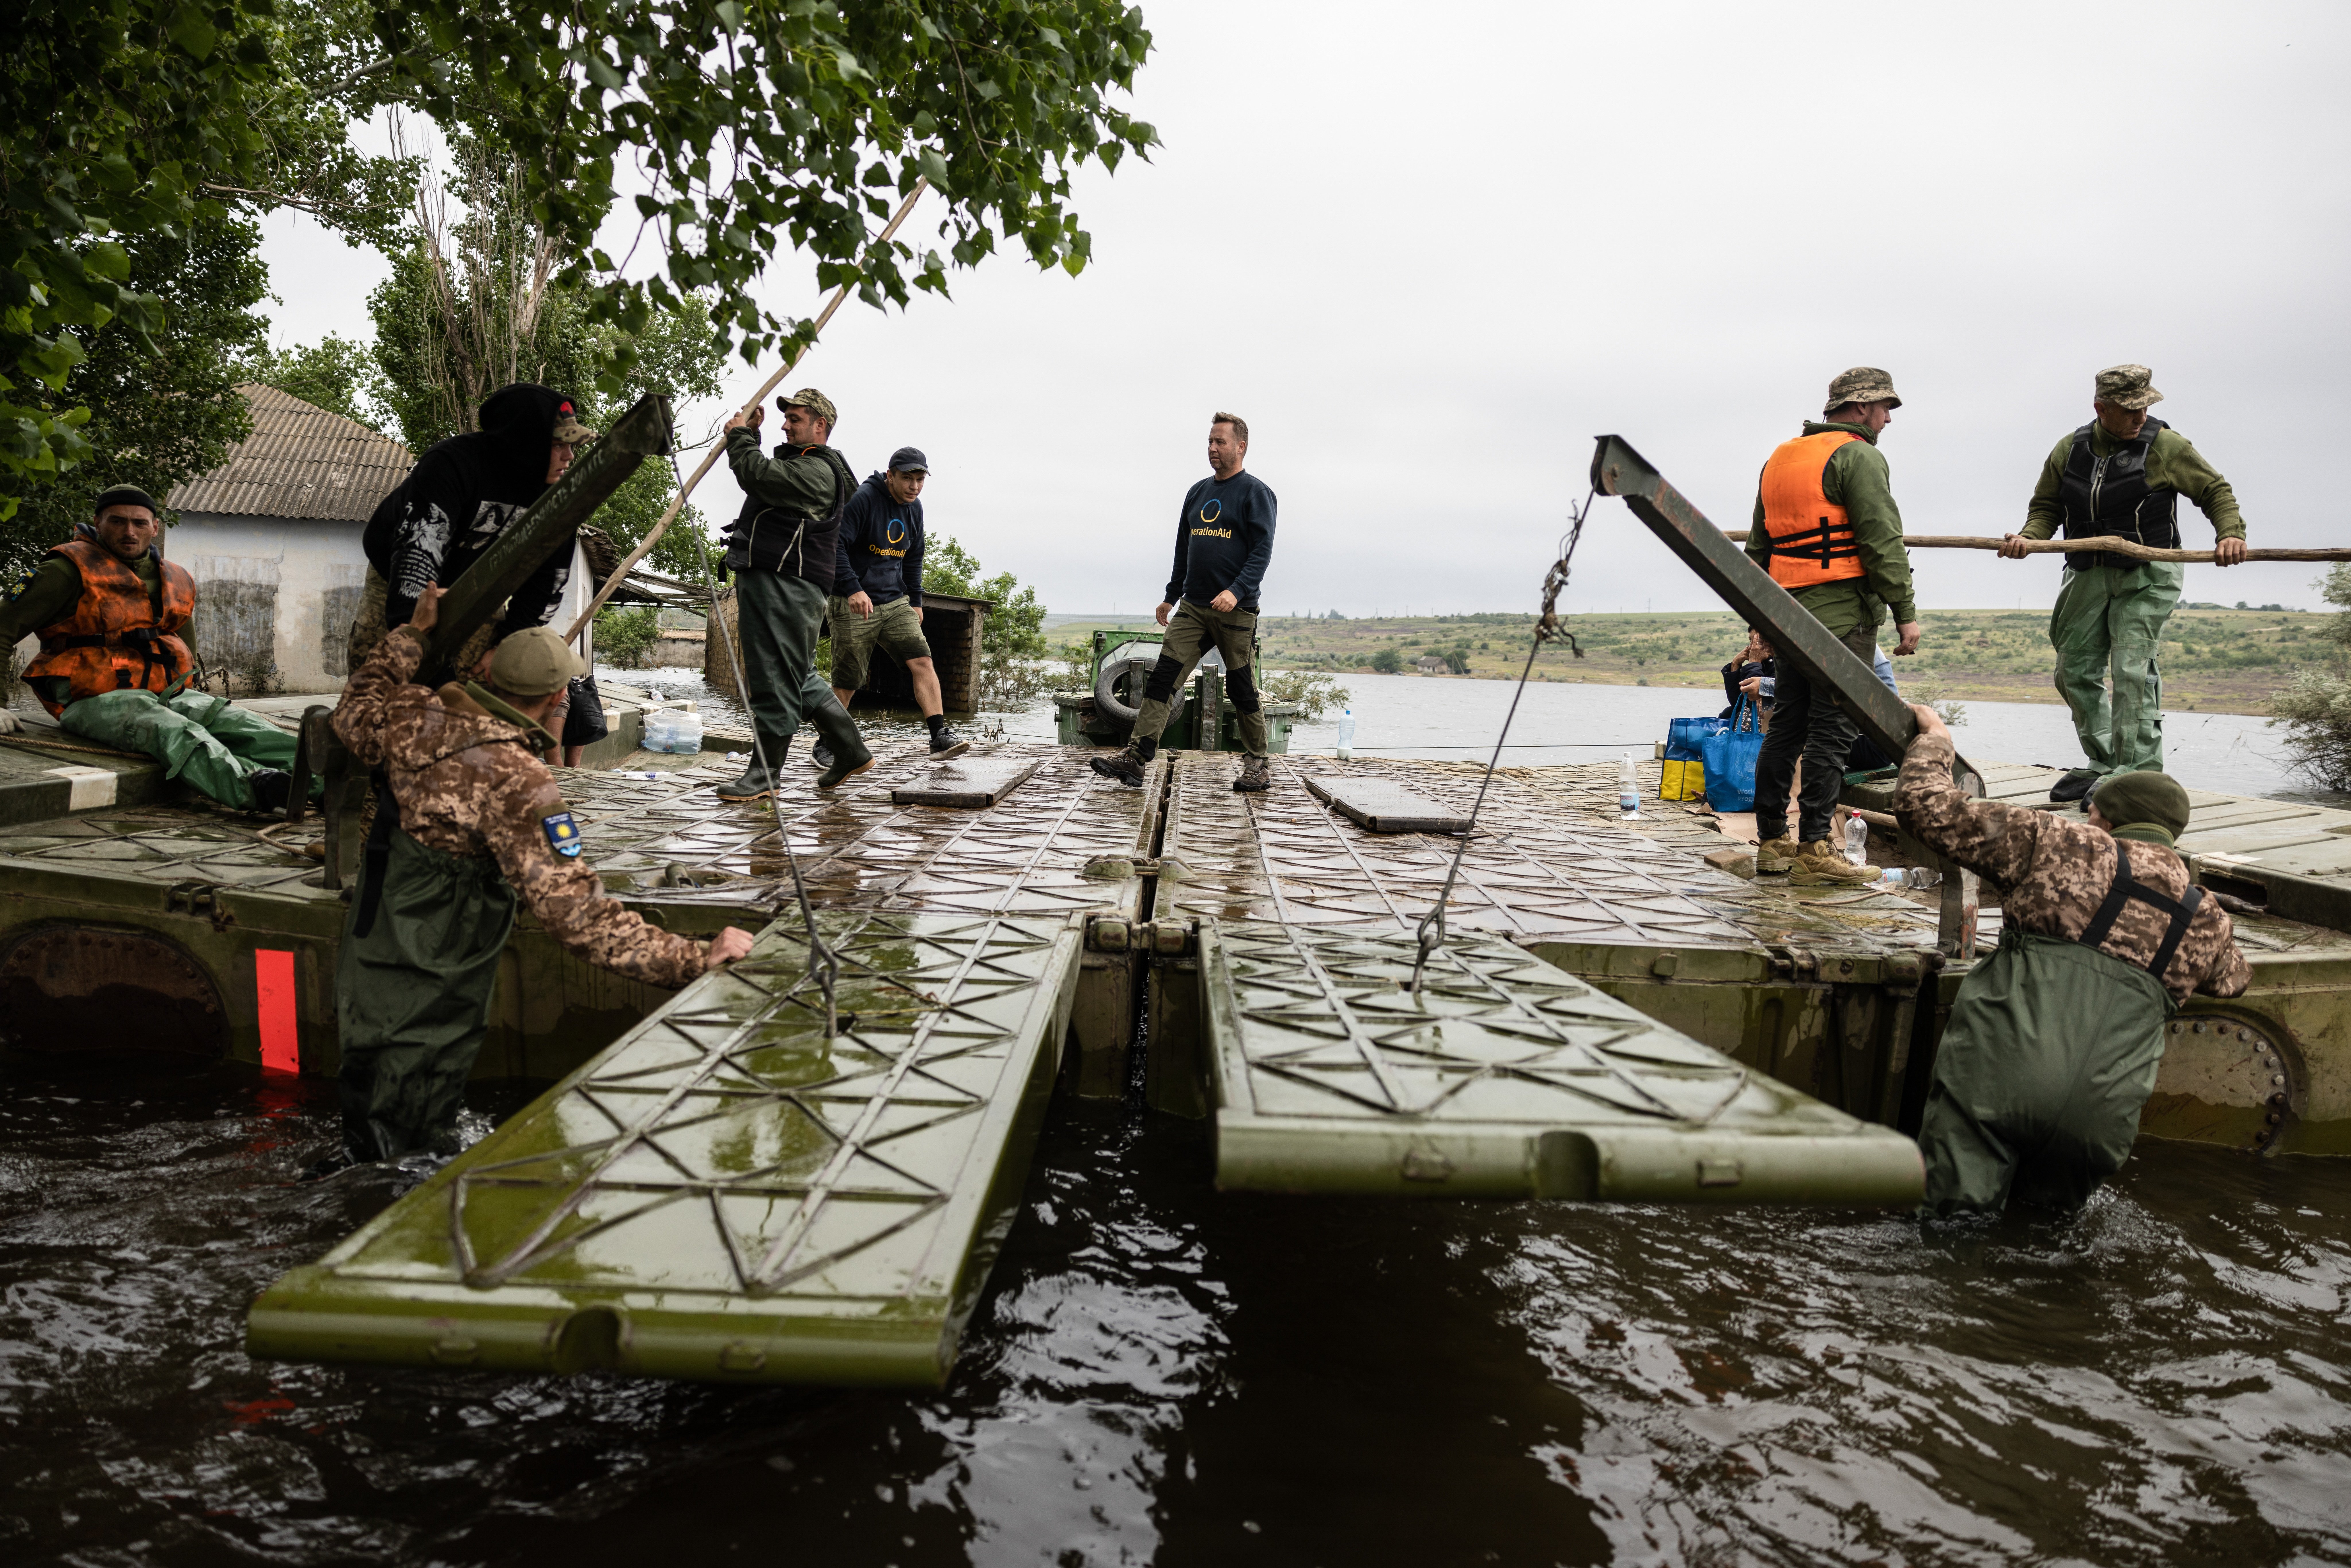 Moscou bloqueja l'ajuda humanitària a les zones afectades pel trencament de la presa de Kakhovka